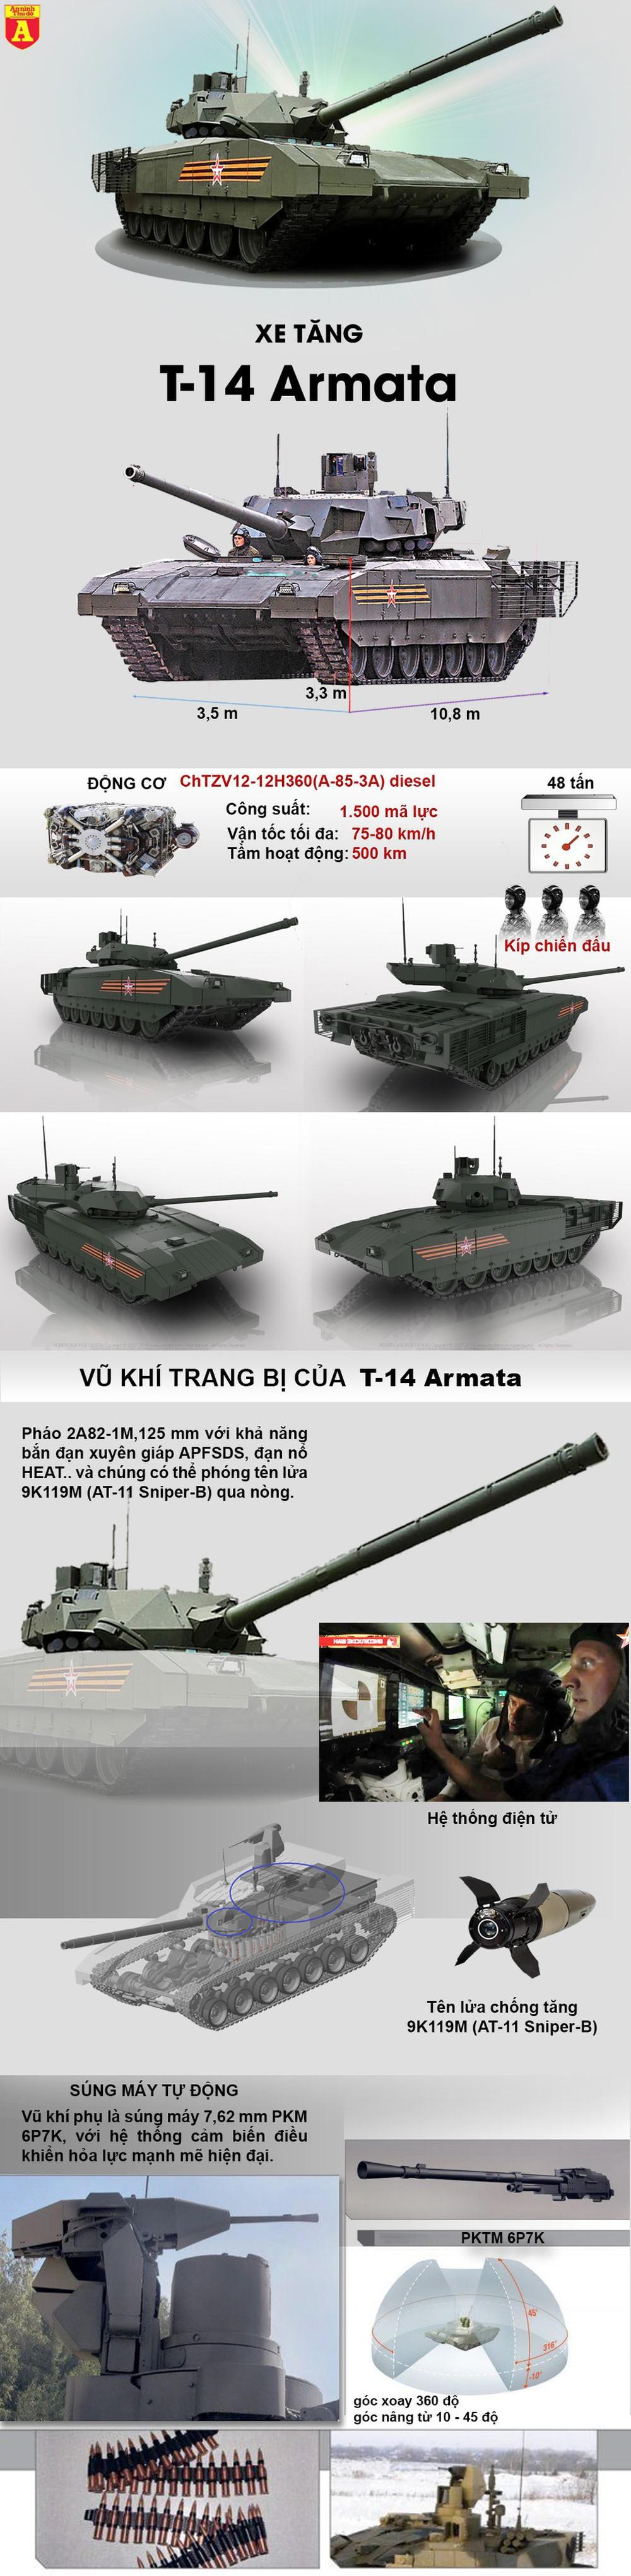 Sức mạnh khi tác chiến của siêu tăng T-14 Armata - Ảnh 1